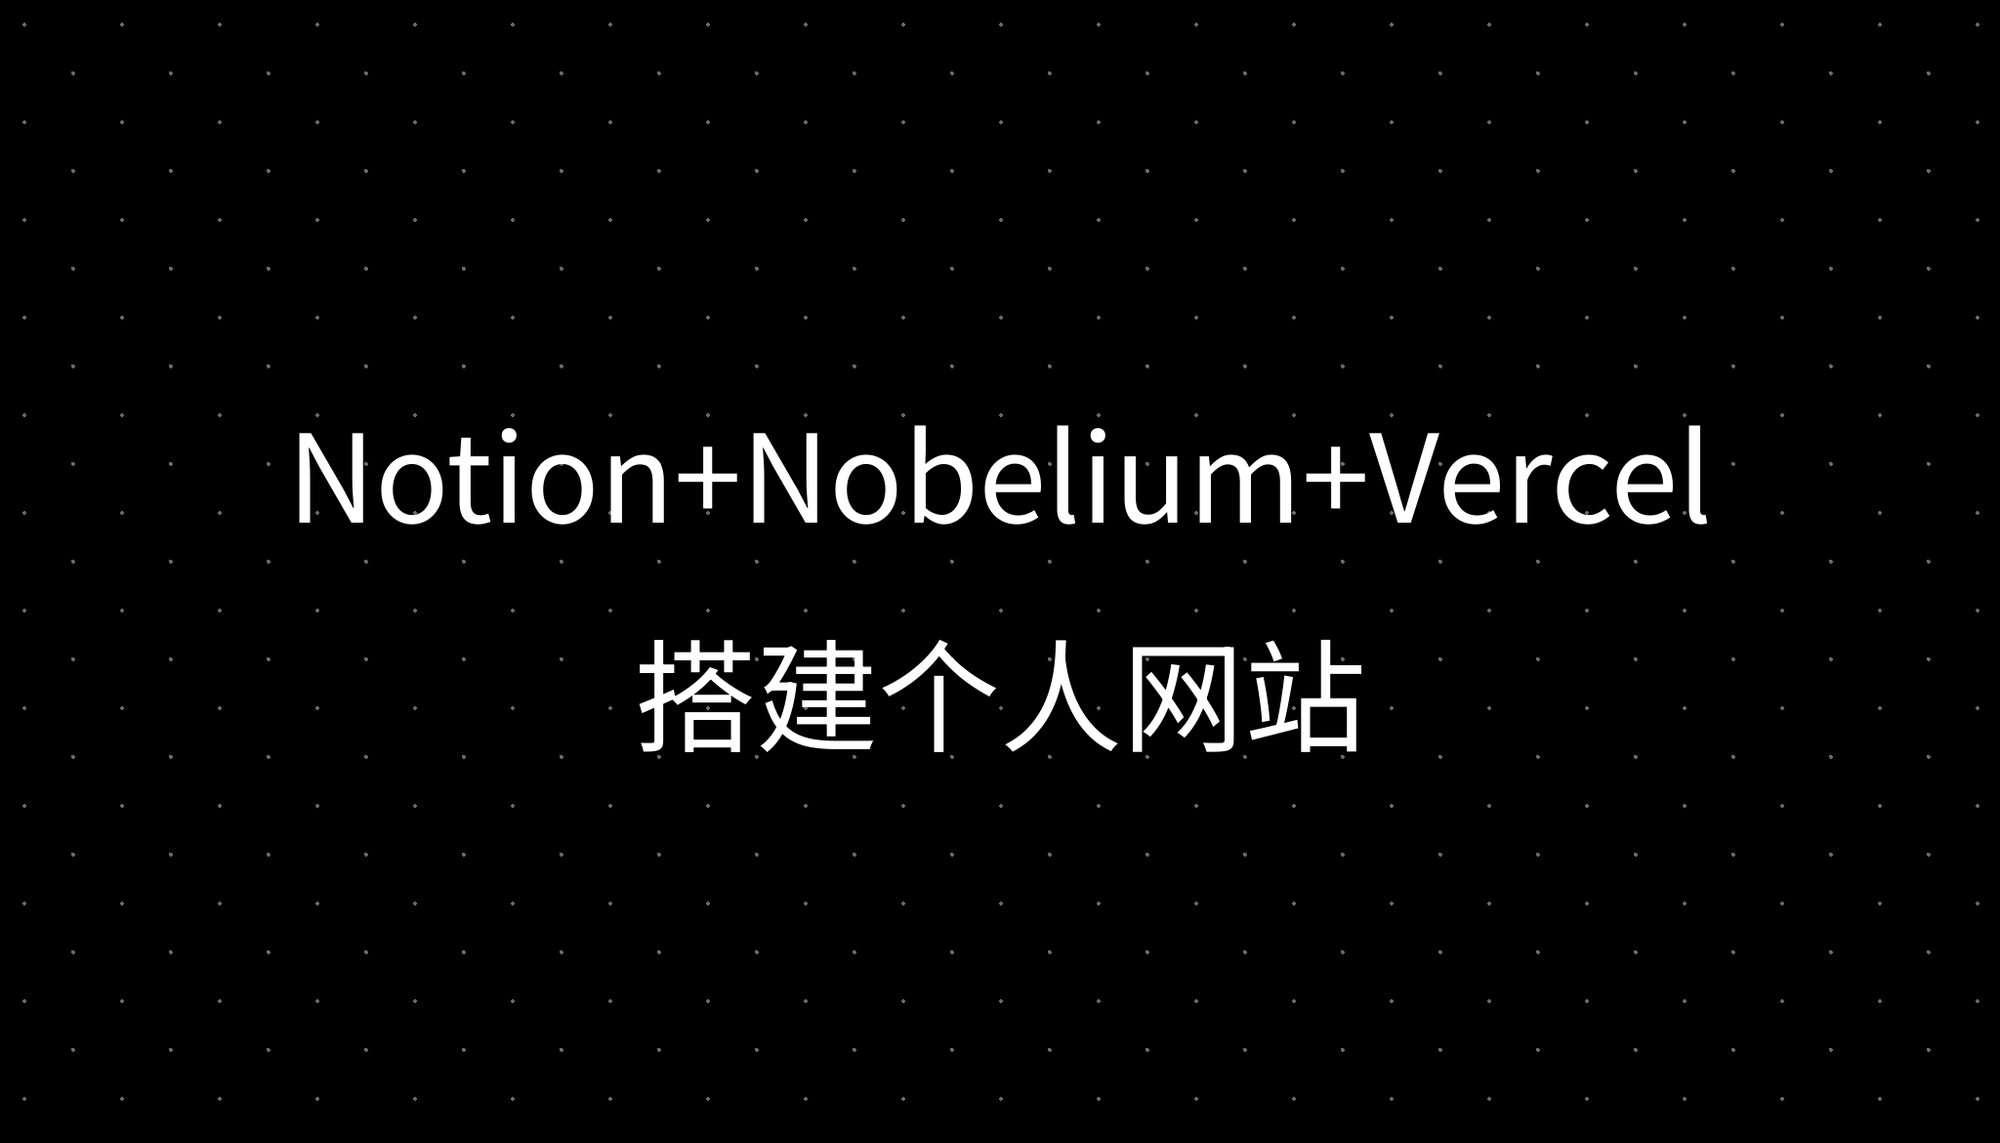 Notion+Nobelium+Vercel搭建个人网站